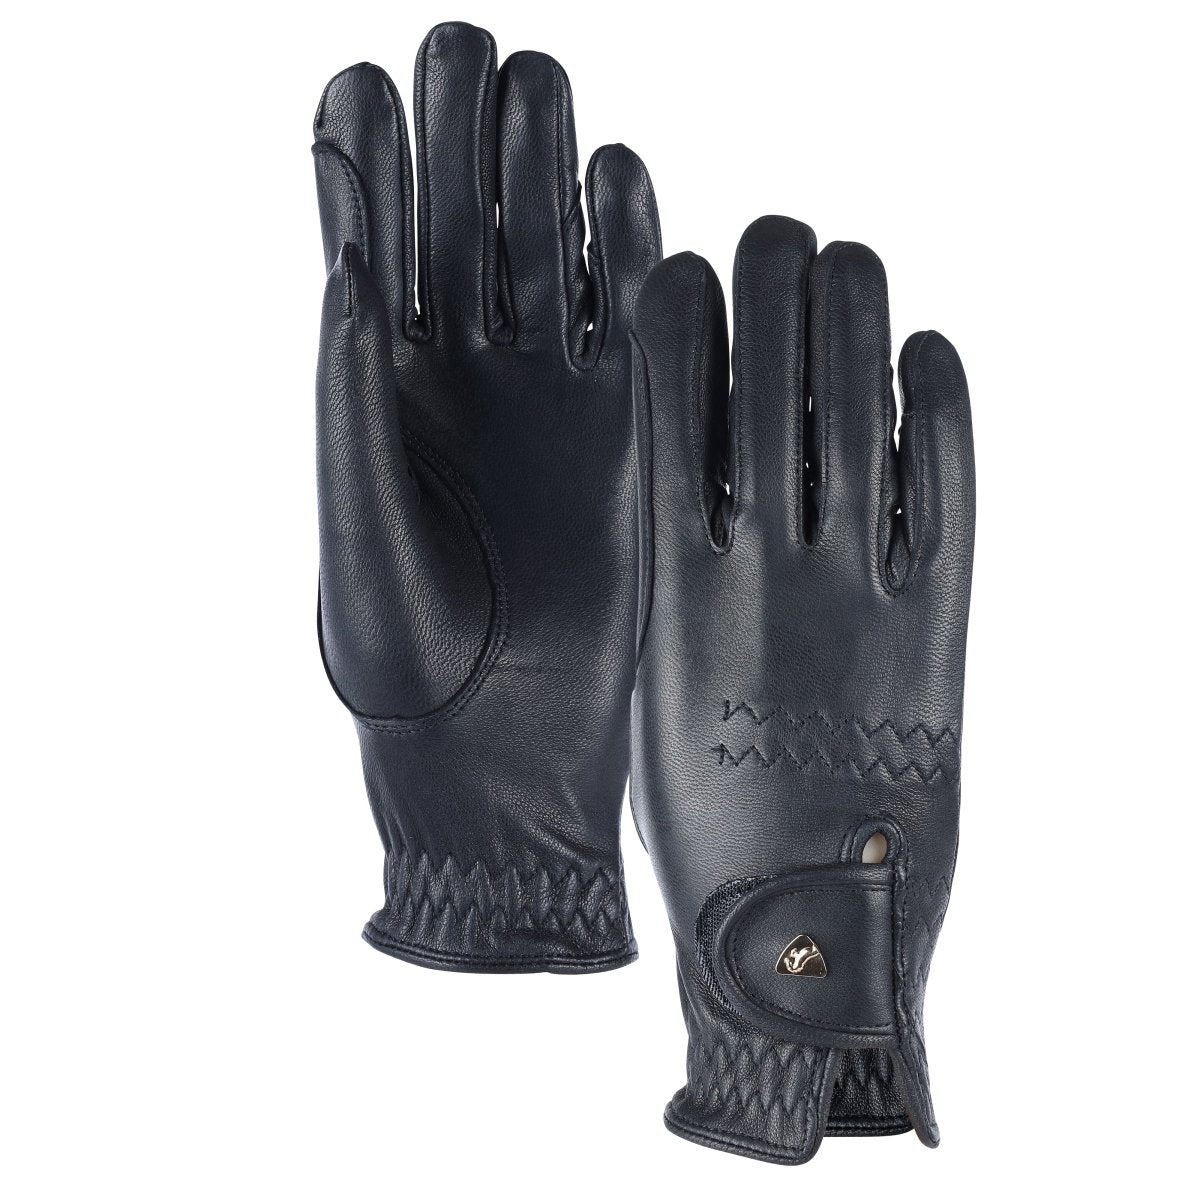 Aubrion Estade Premium Riding Gloves - Black - XS